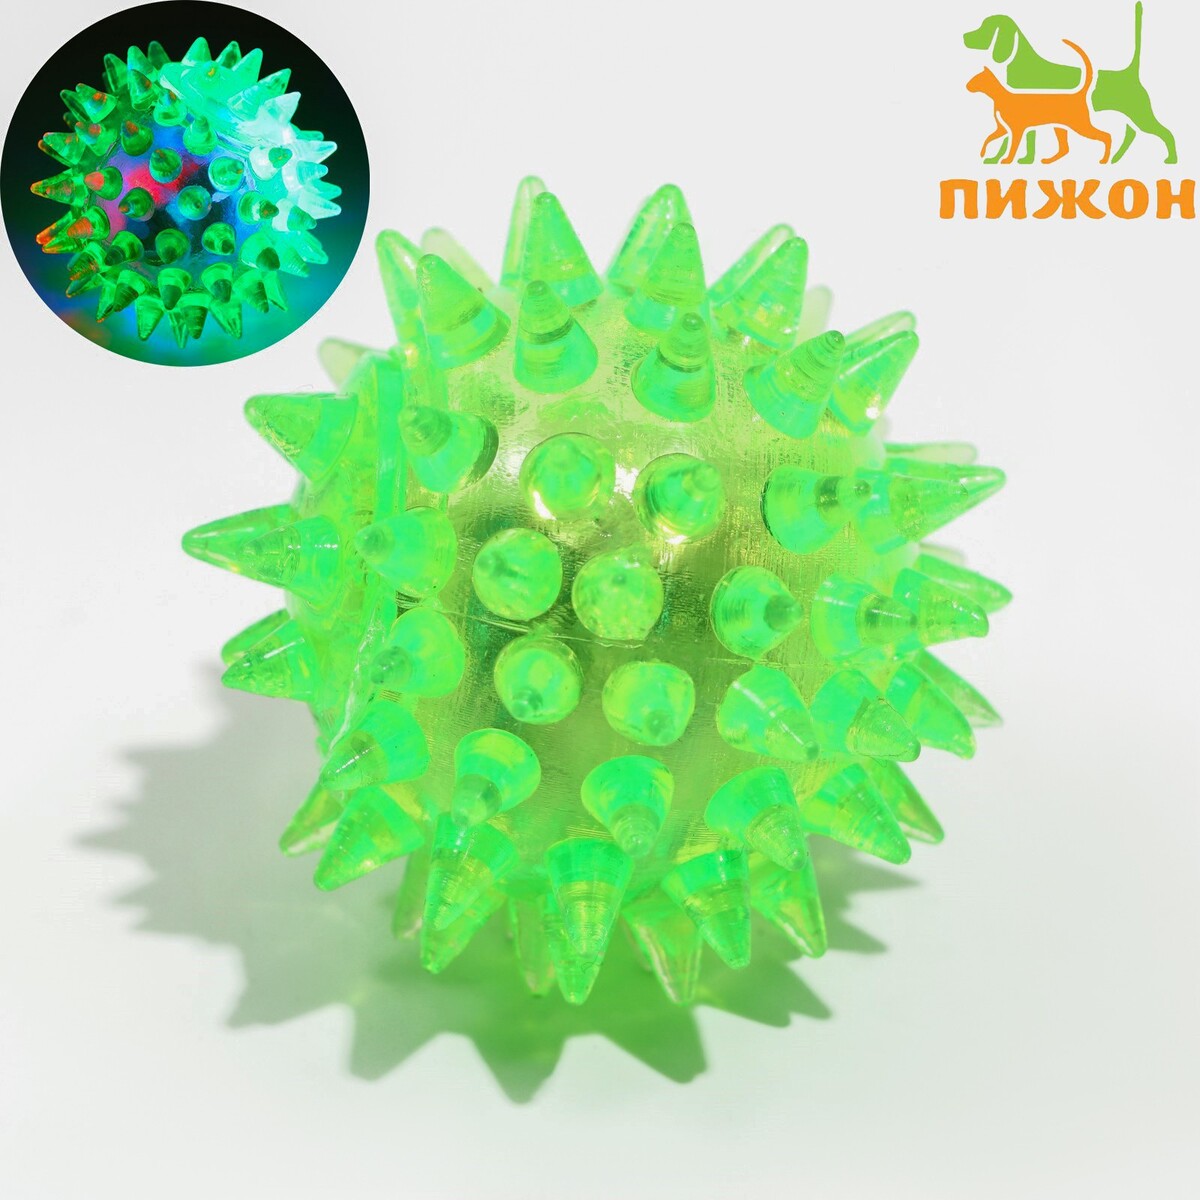 Мяч светящийся для животных малый, tpr, 4,5 см, зеленый